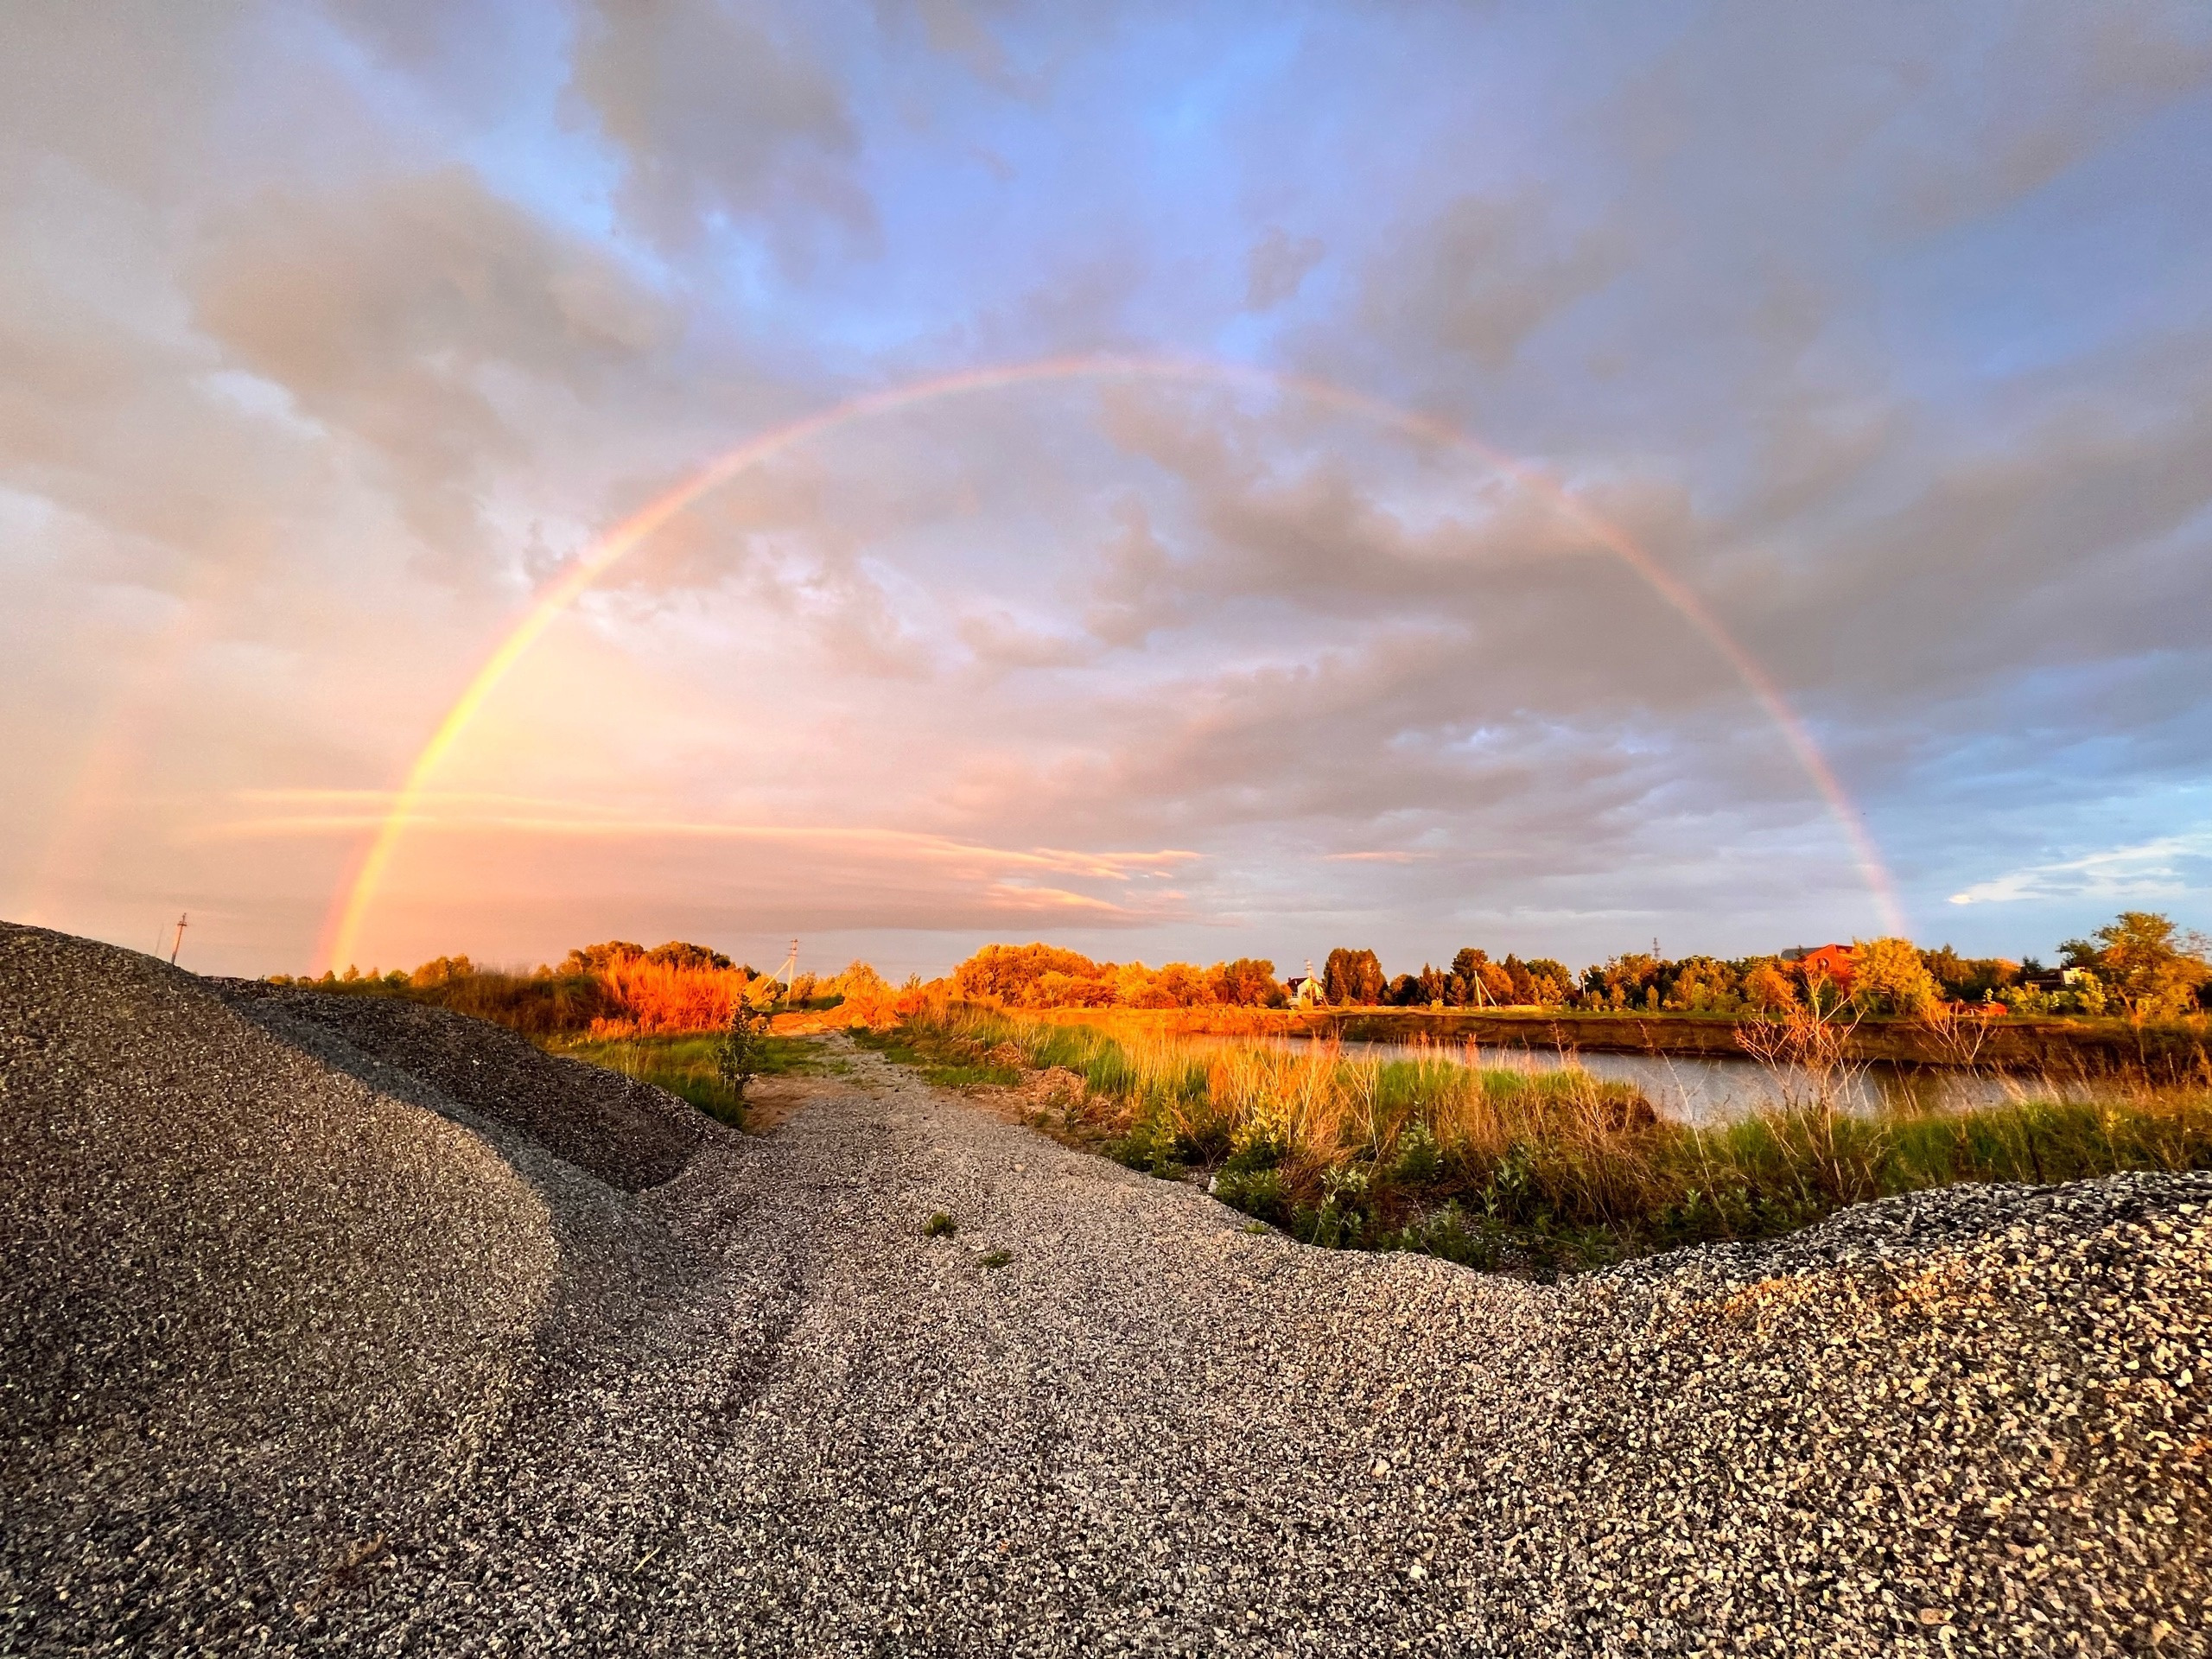 «Цвет меняется фантастически»: в небе над Новосибирском появилась яркая радуга — впечатляющие фотографии